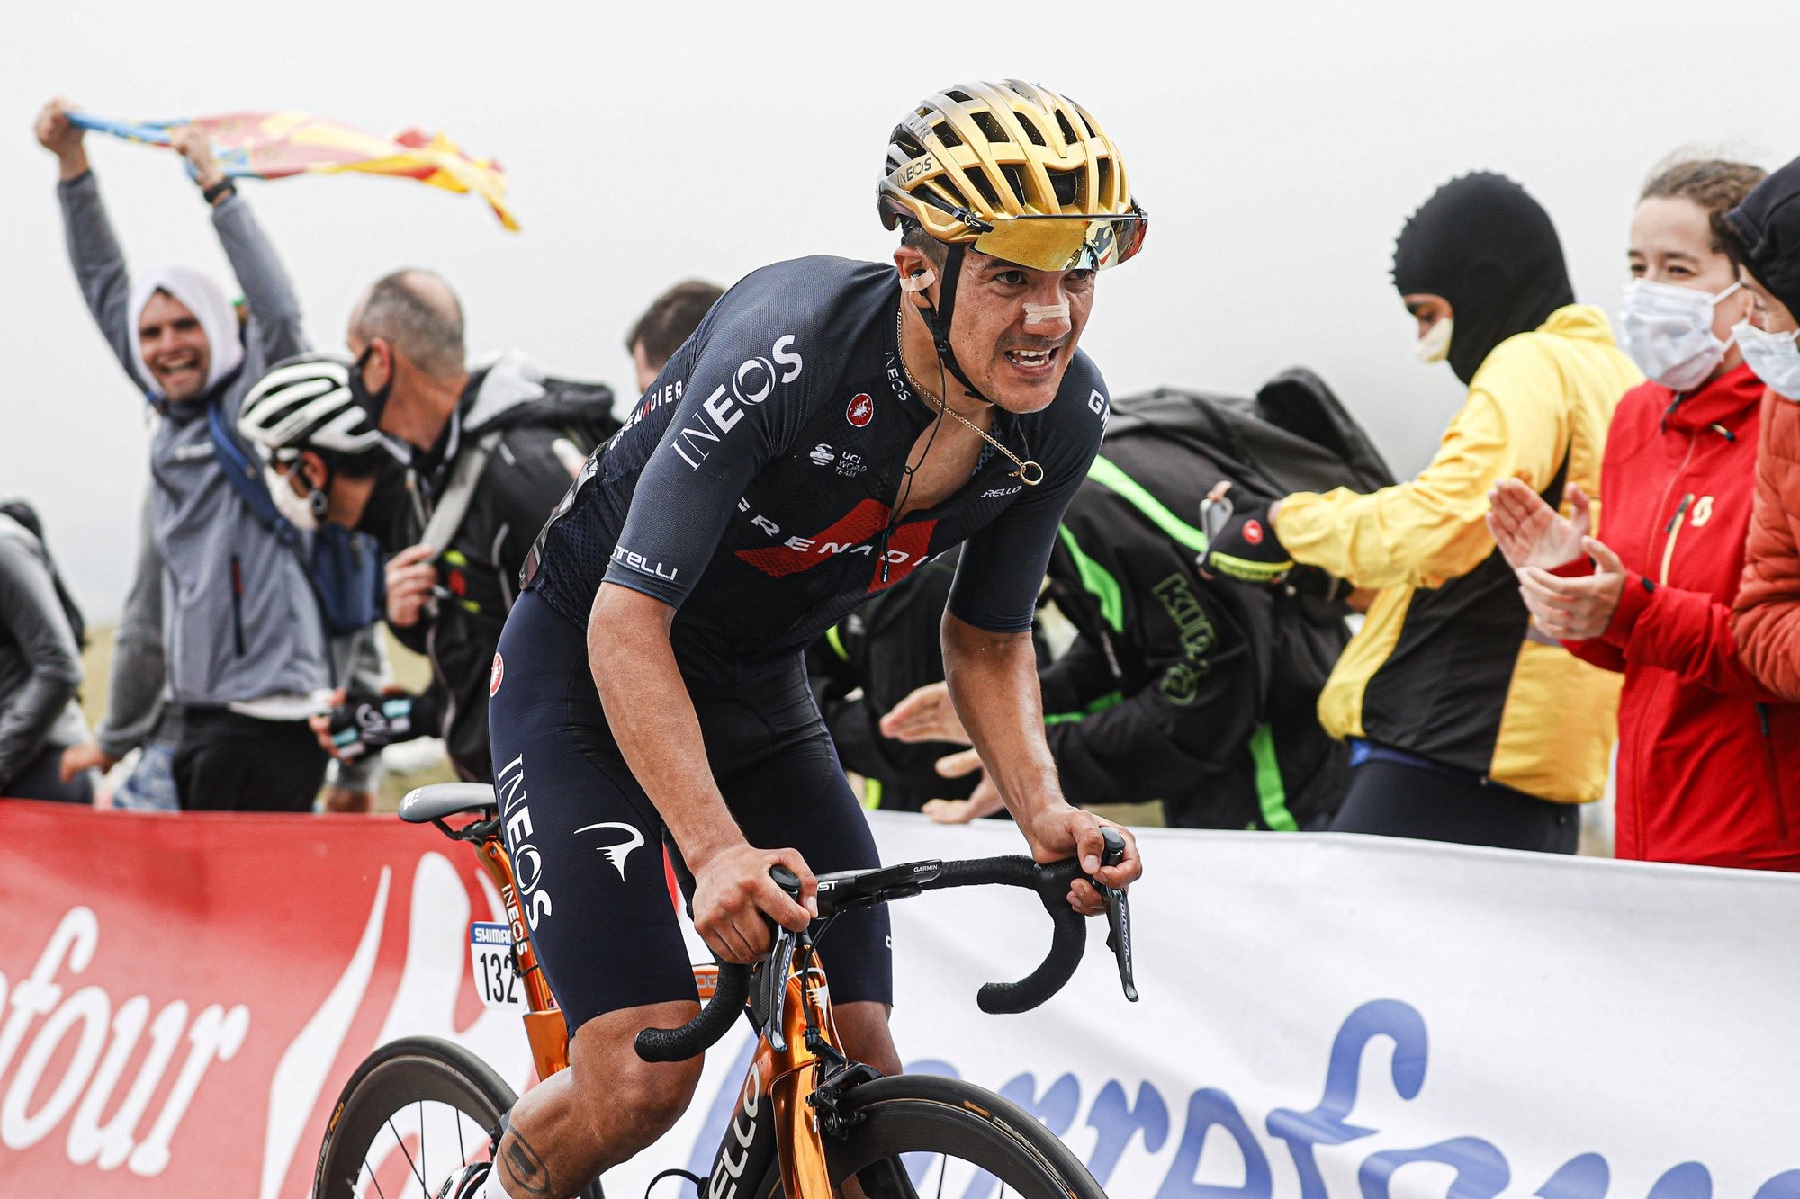 Richard Carapaz apuesta en grande para 2022: “Quiero ganar el Tour” – Ciclismo Internacional